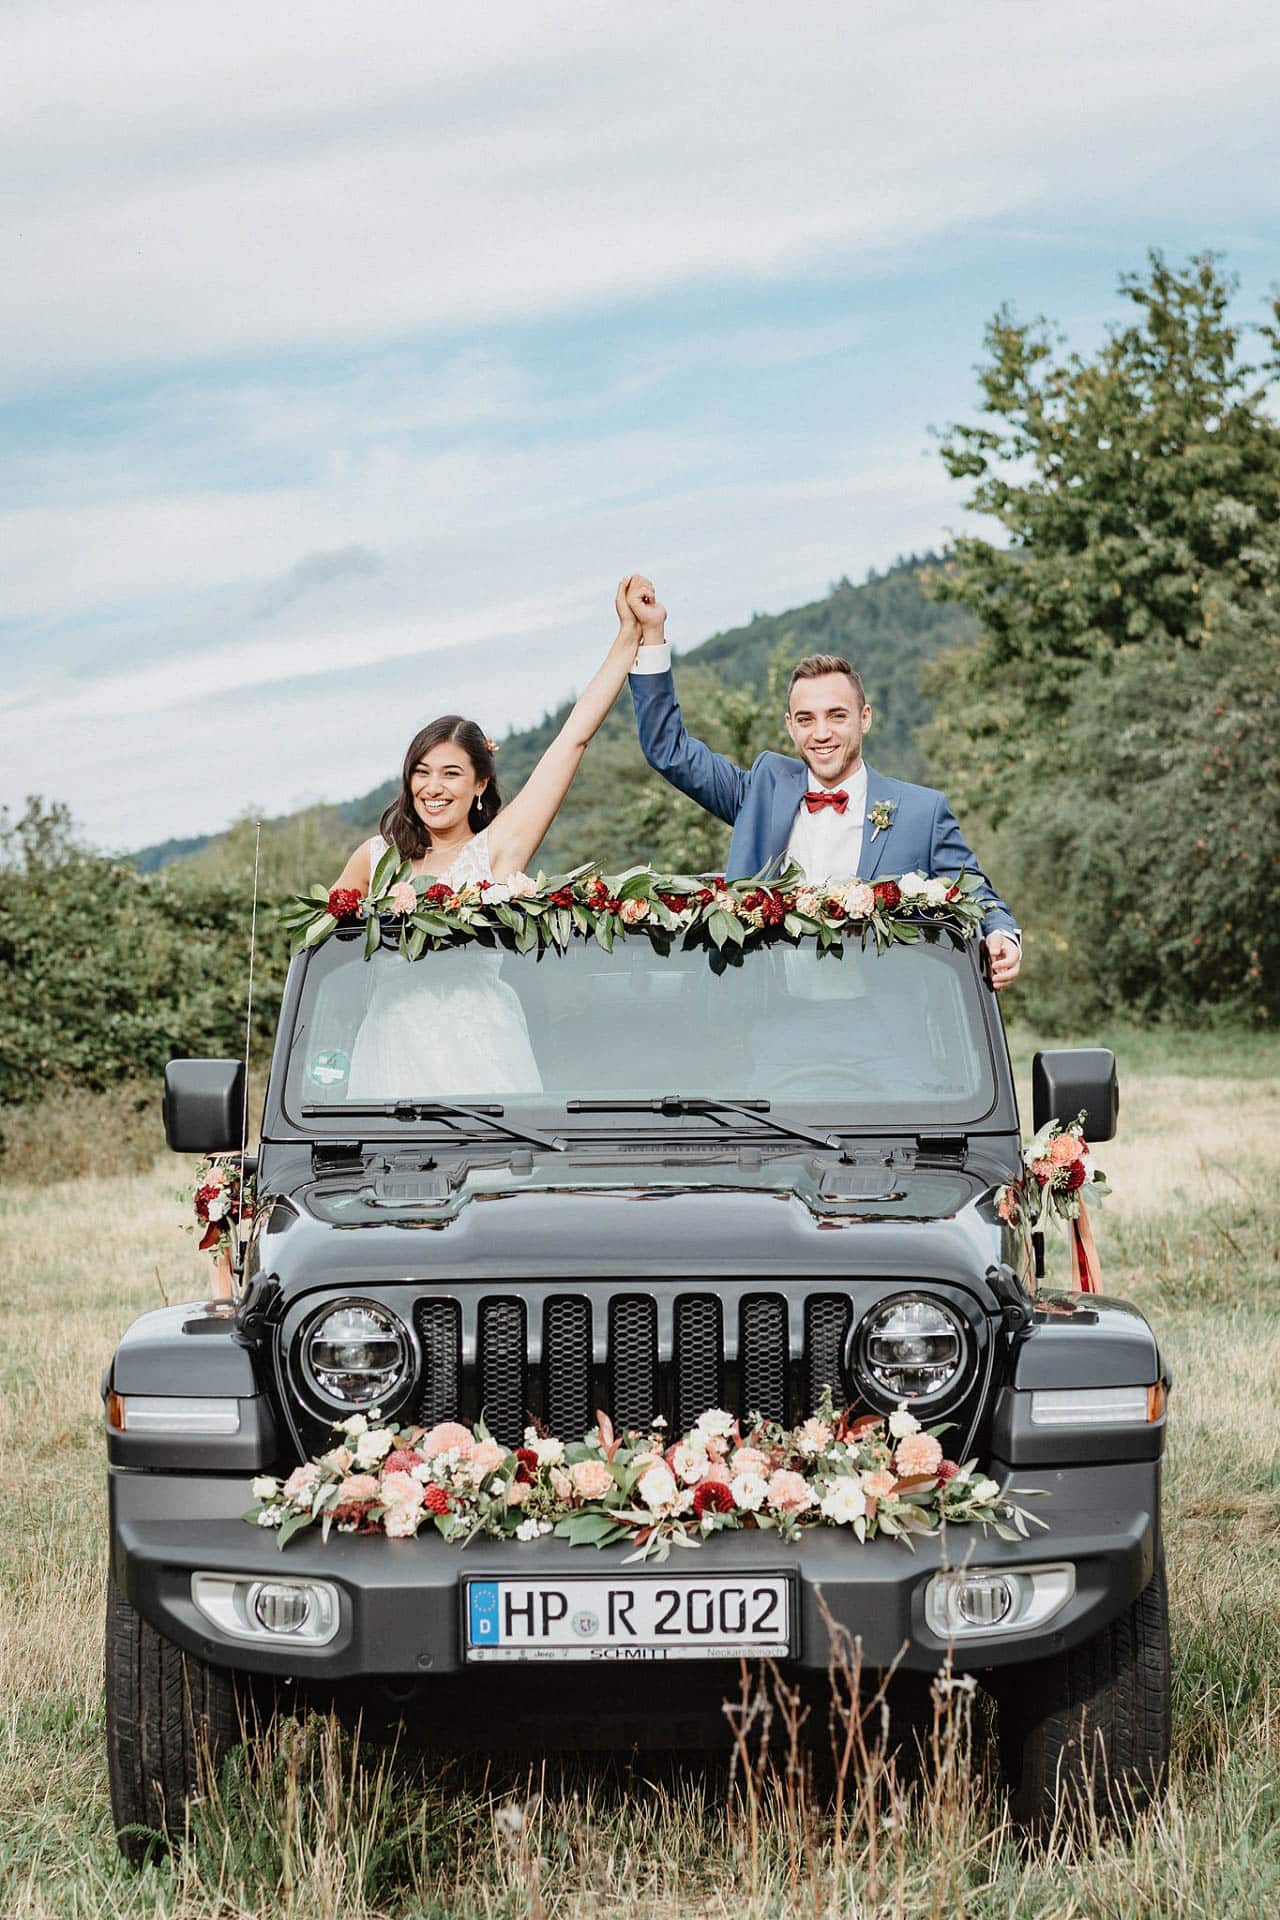 Brautpaar im schön geschmückten Hochzeitsauto